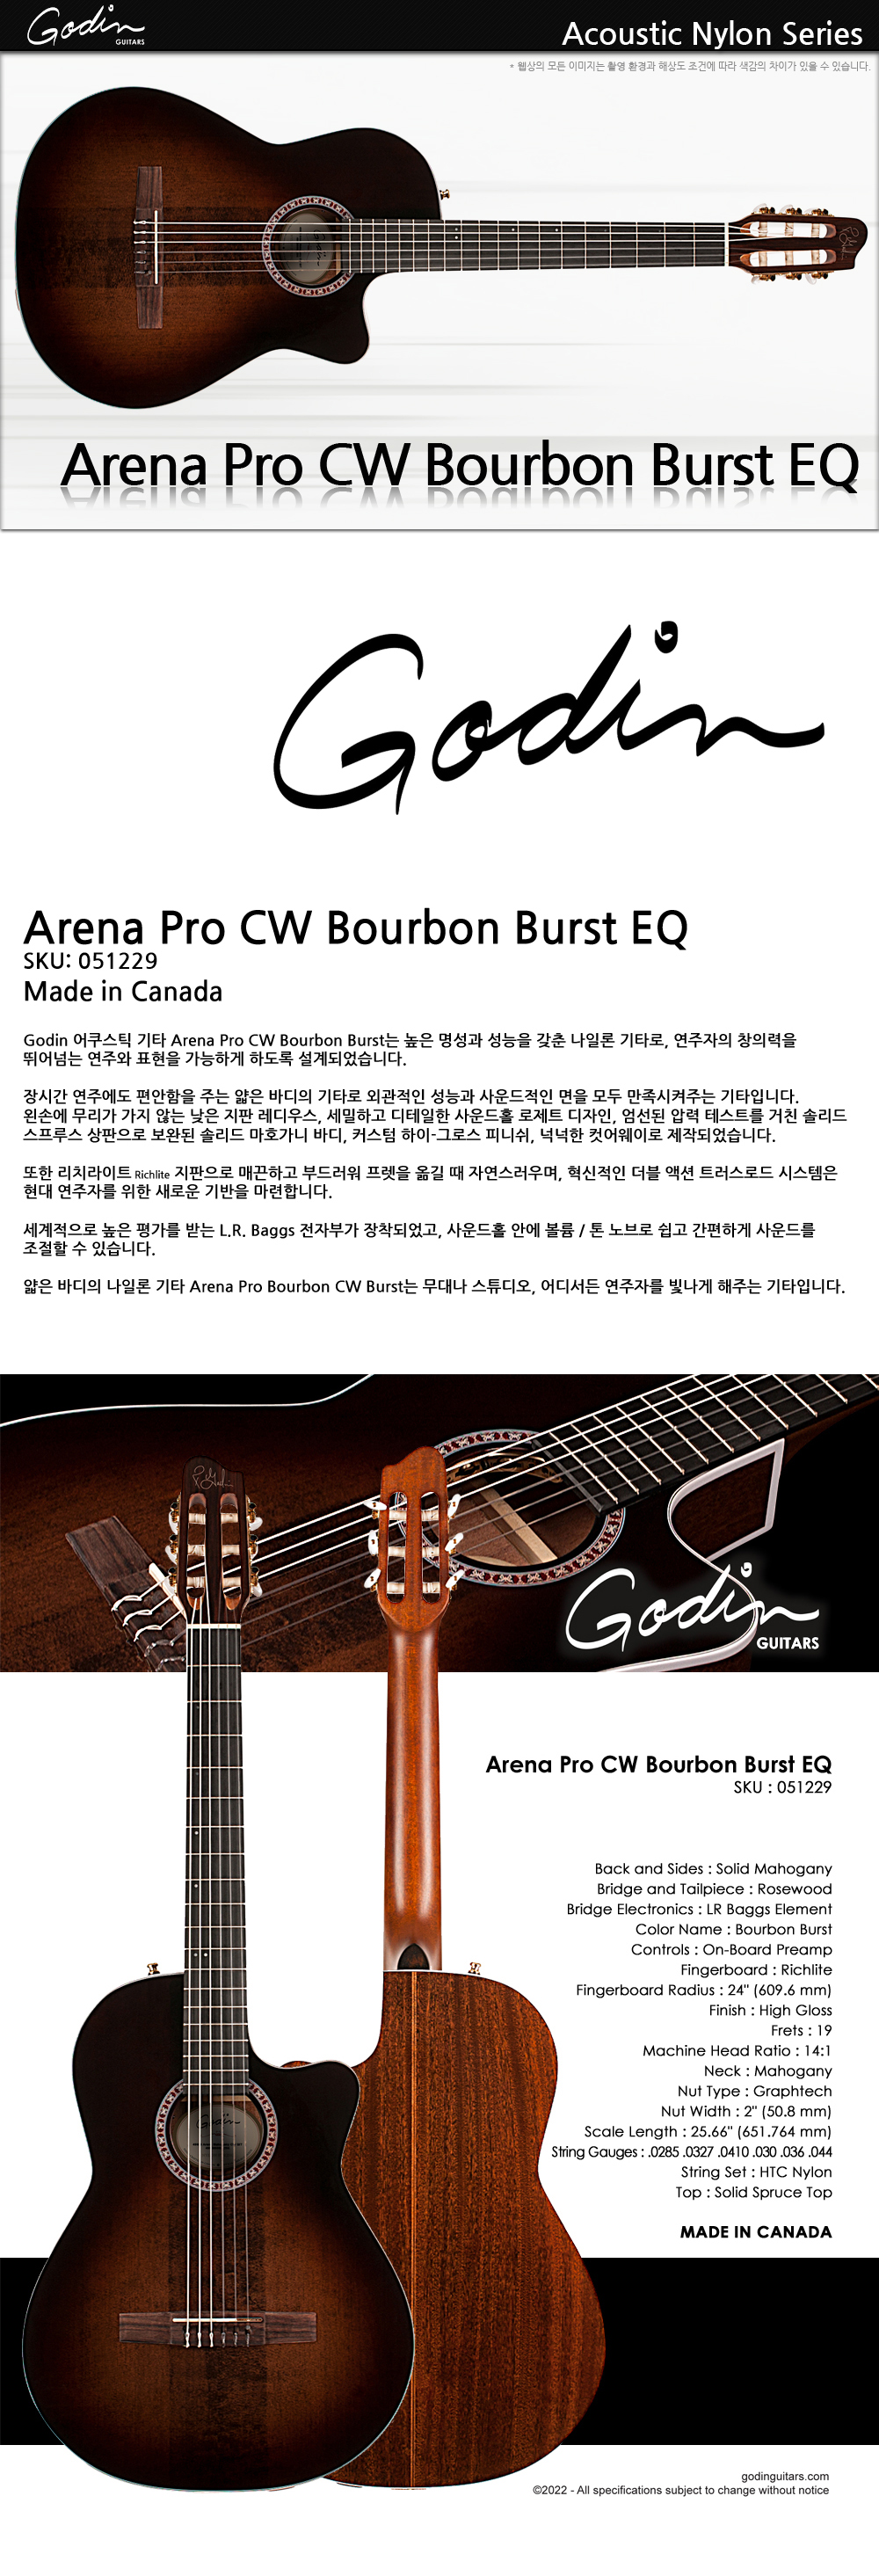 Godin-051229-Nylon-Arena-Pro-CW-BourbonBurst-EQ_1_135041.jpg